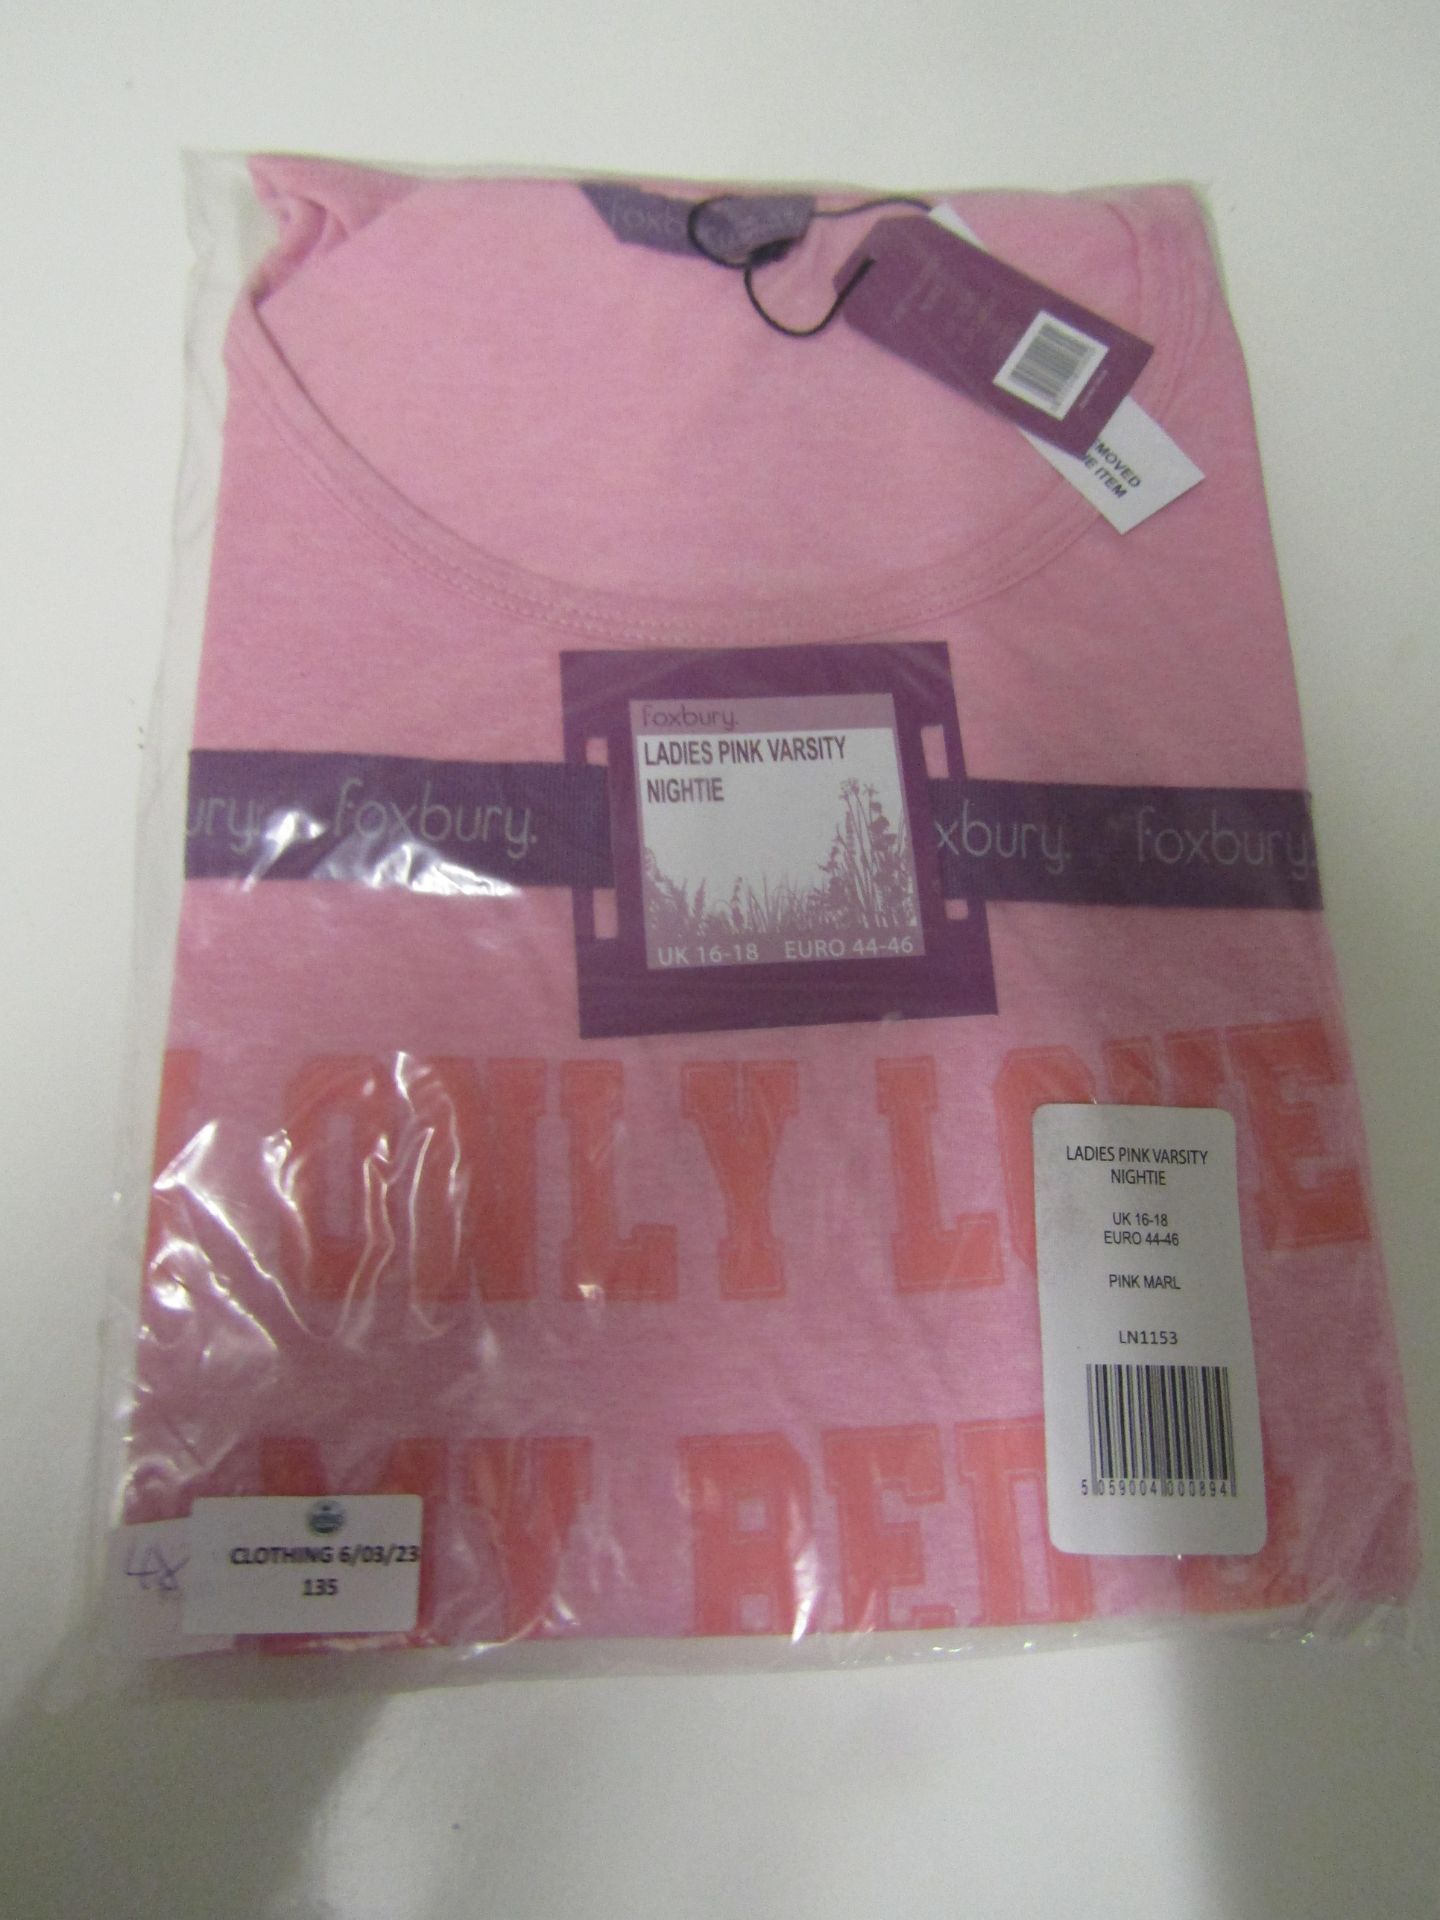 Foxbury Ladies Pink Versity Short Sleeve Nighty Size 16-18 New & Packaged